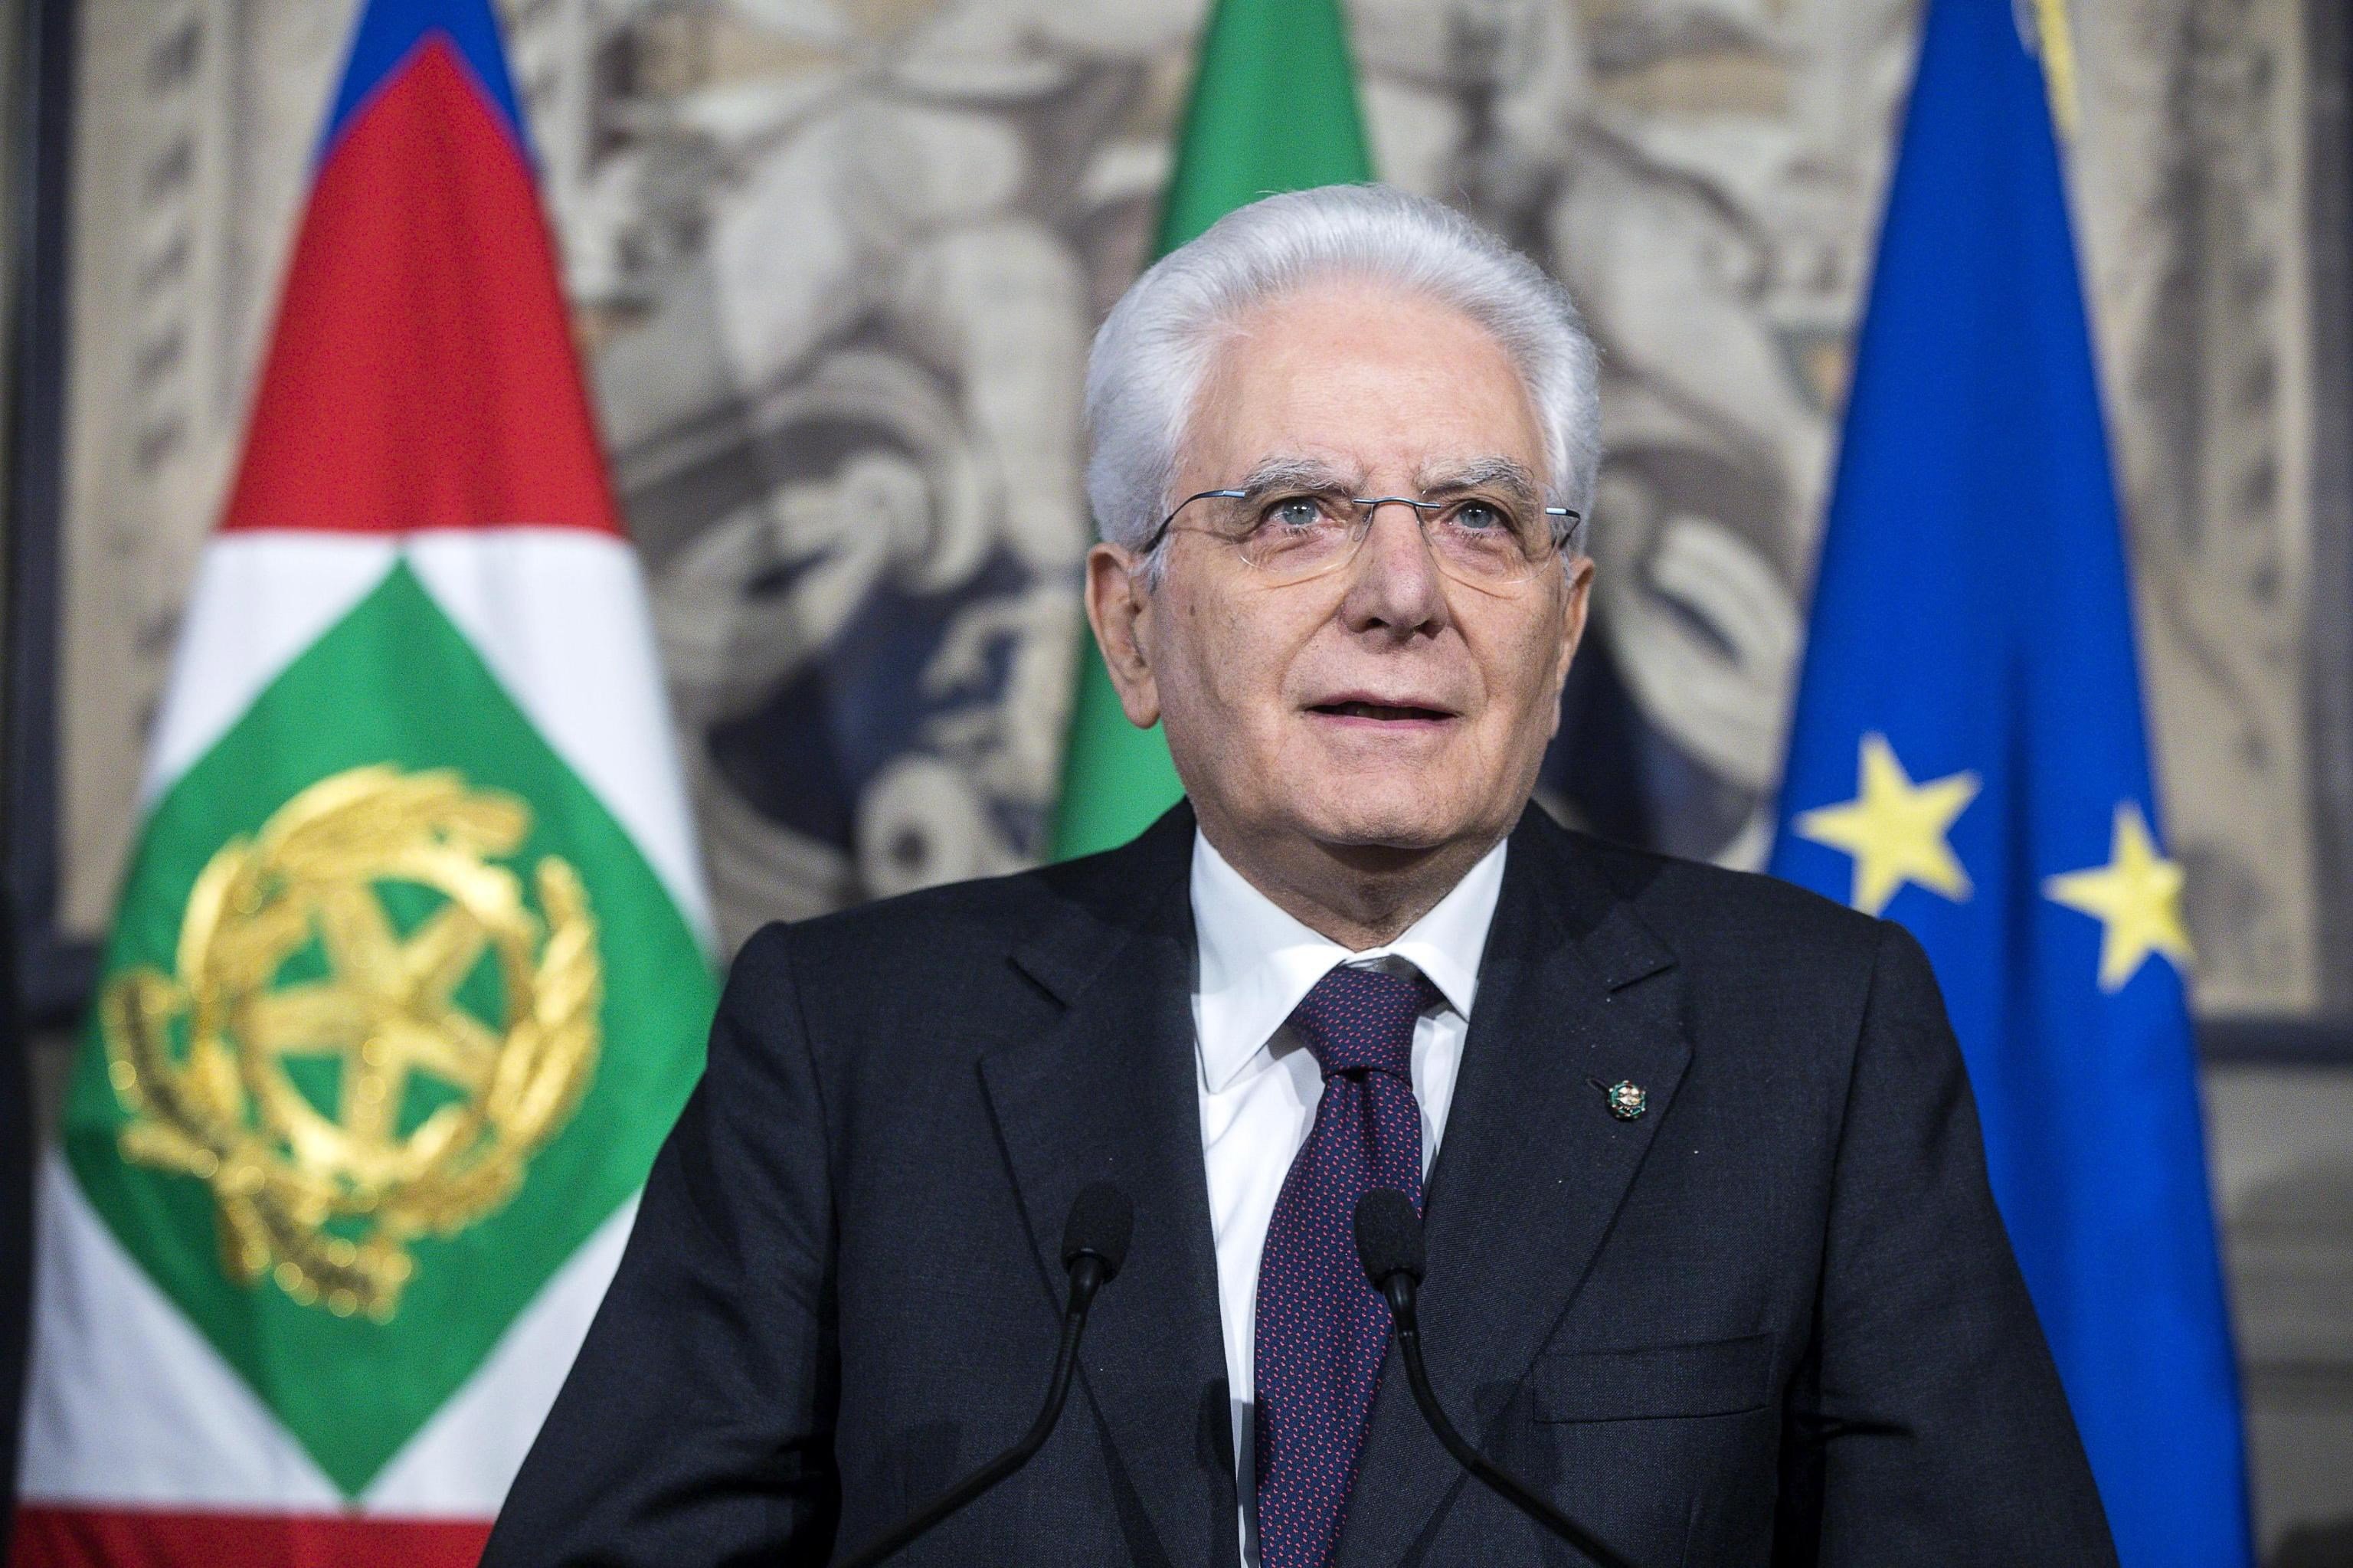 La falta de acuerdo político aboca a Italia a nuevas elecciones